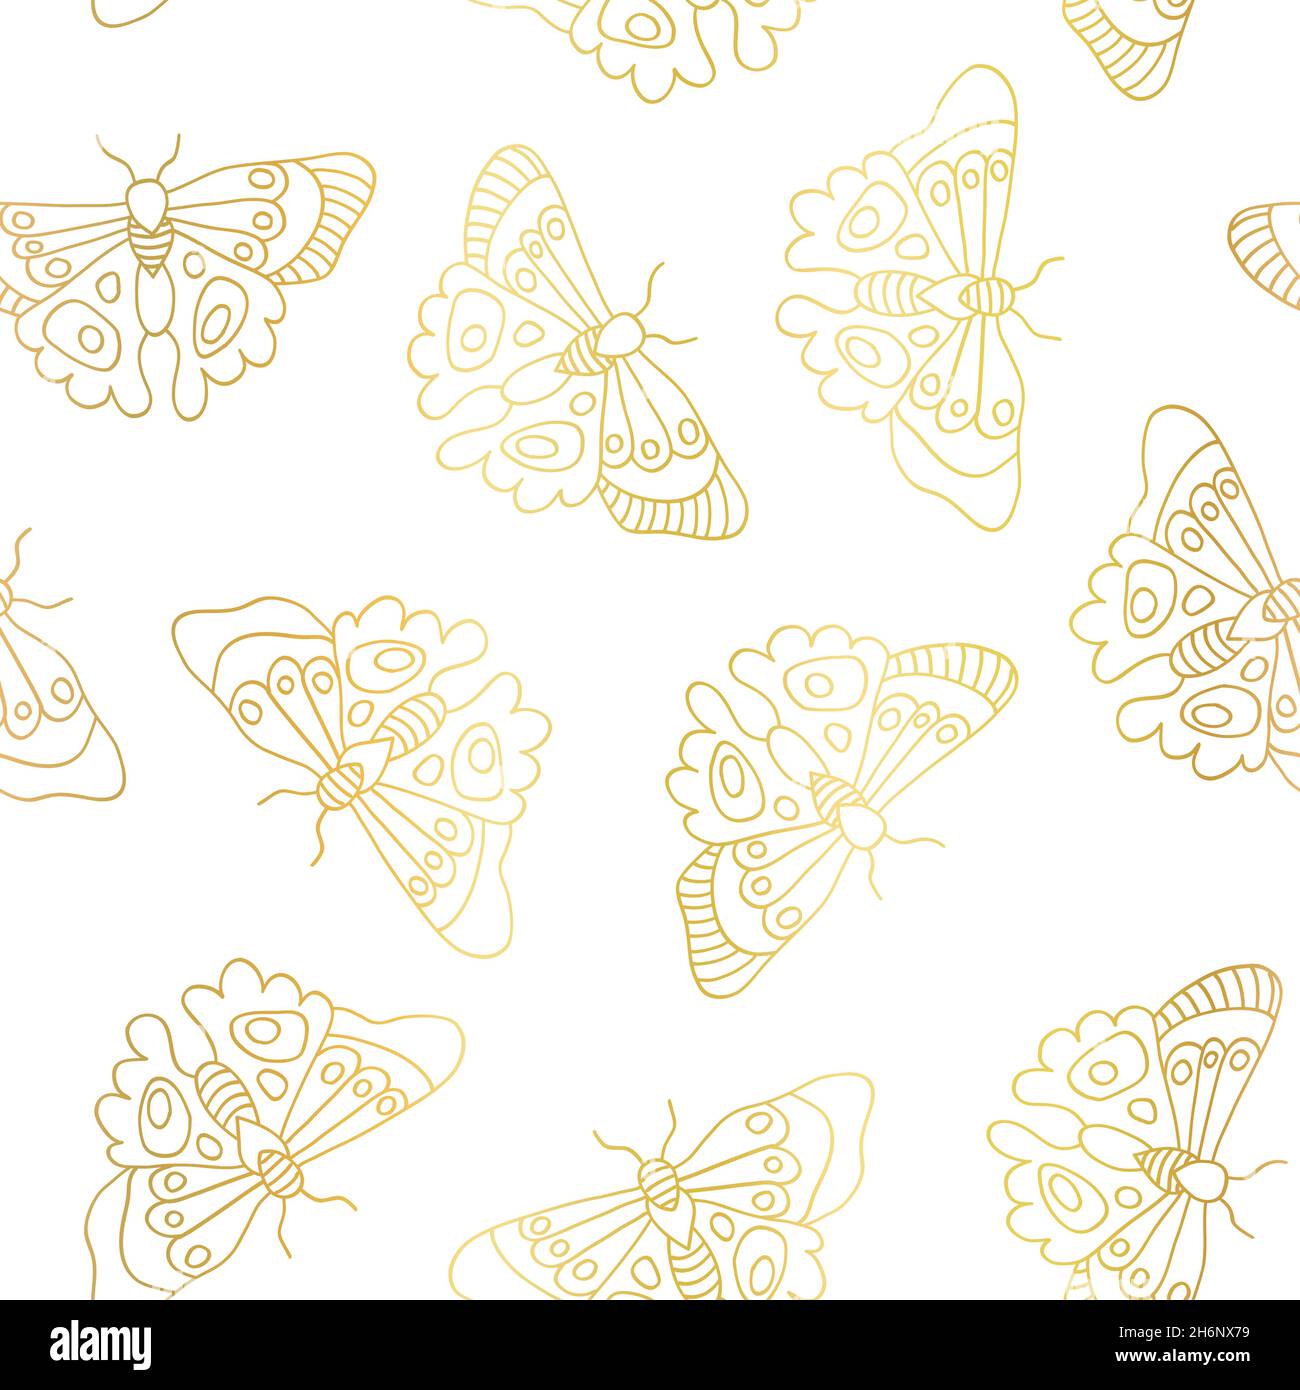 Butterflies seamless vector pattern gold metallic foil effect. Butterfly  golden background line art butterflies on white. Elegant hand drawn design  Stock Vector Image & Art - Alamy